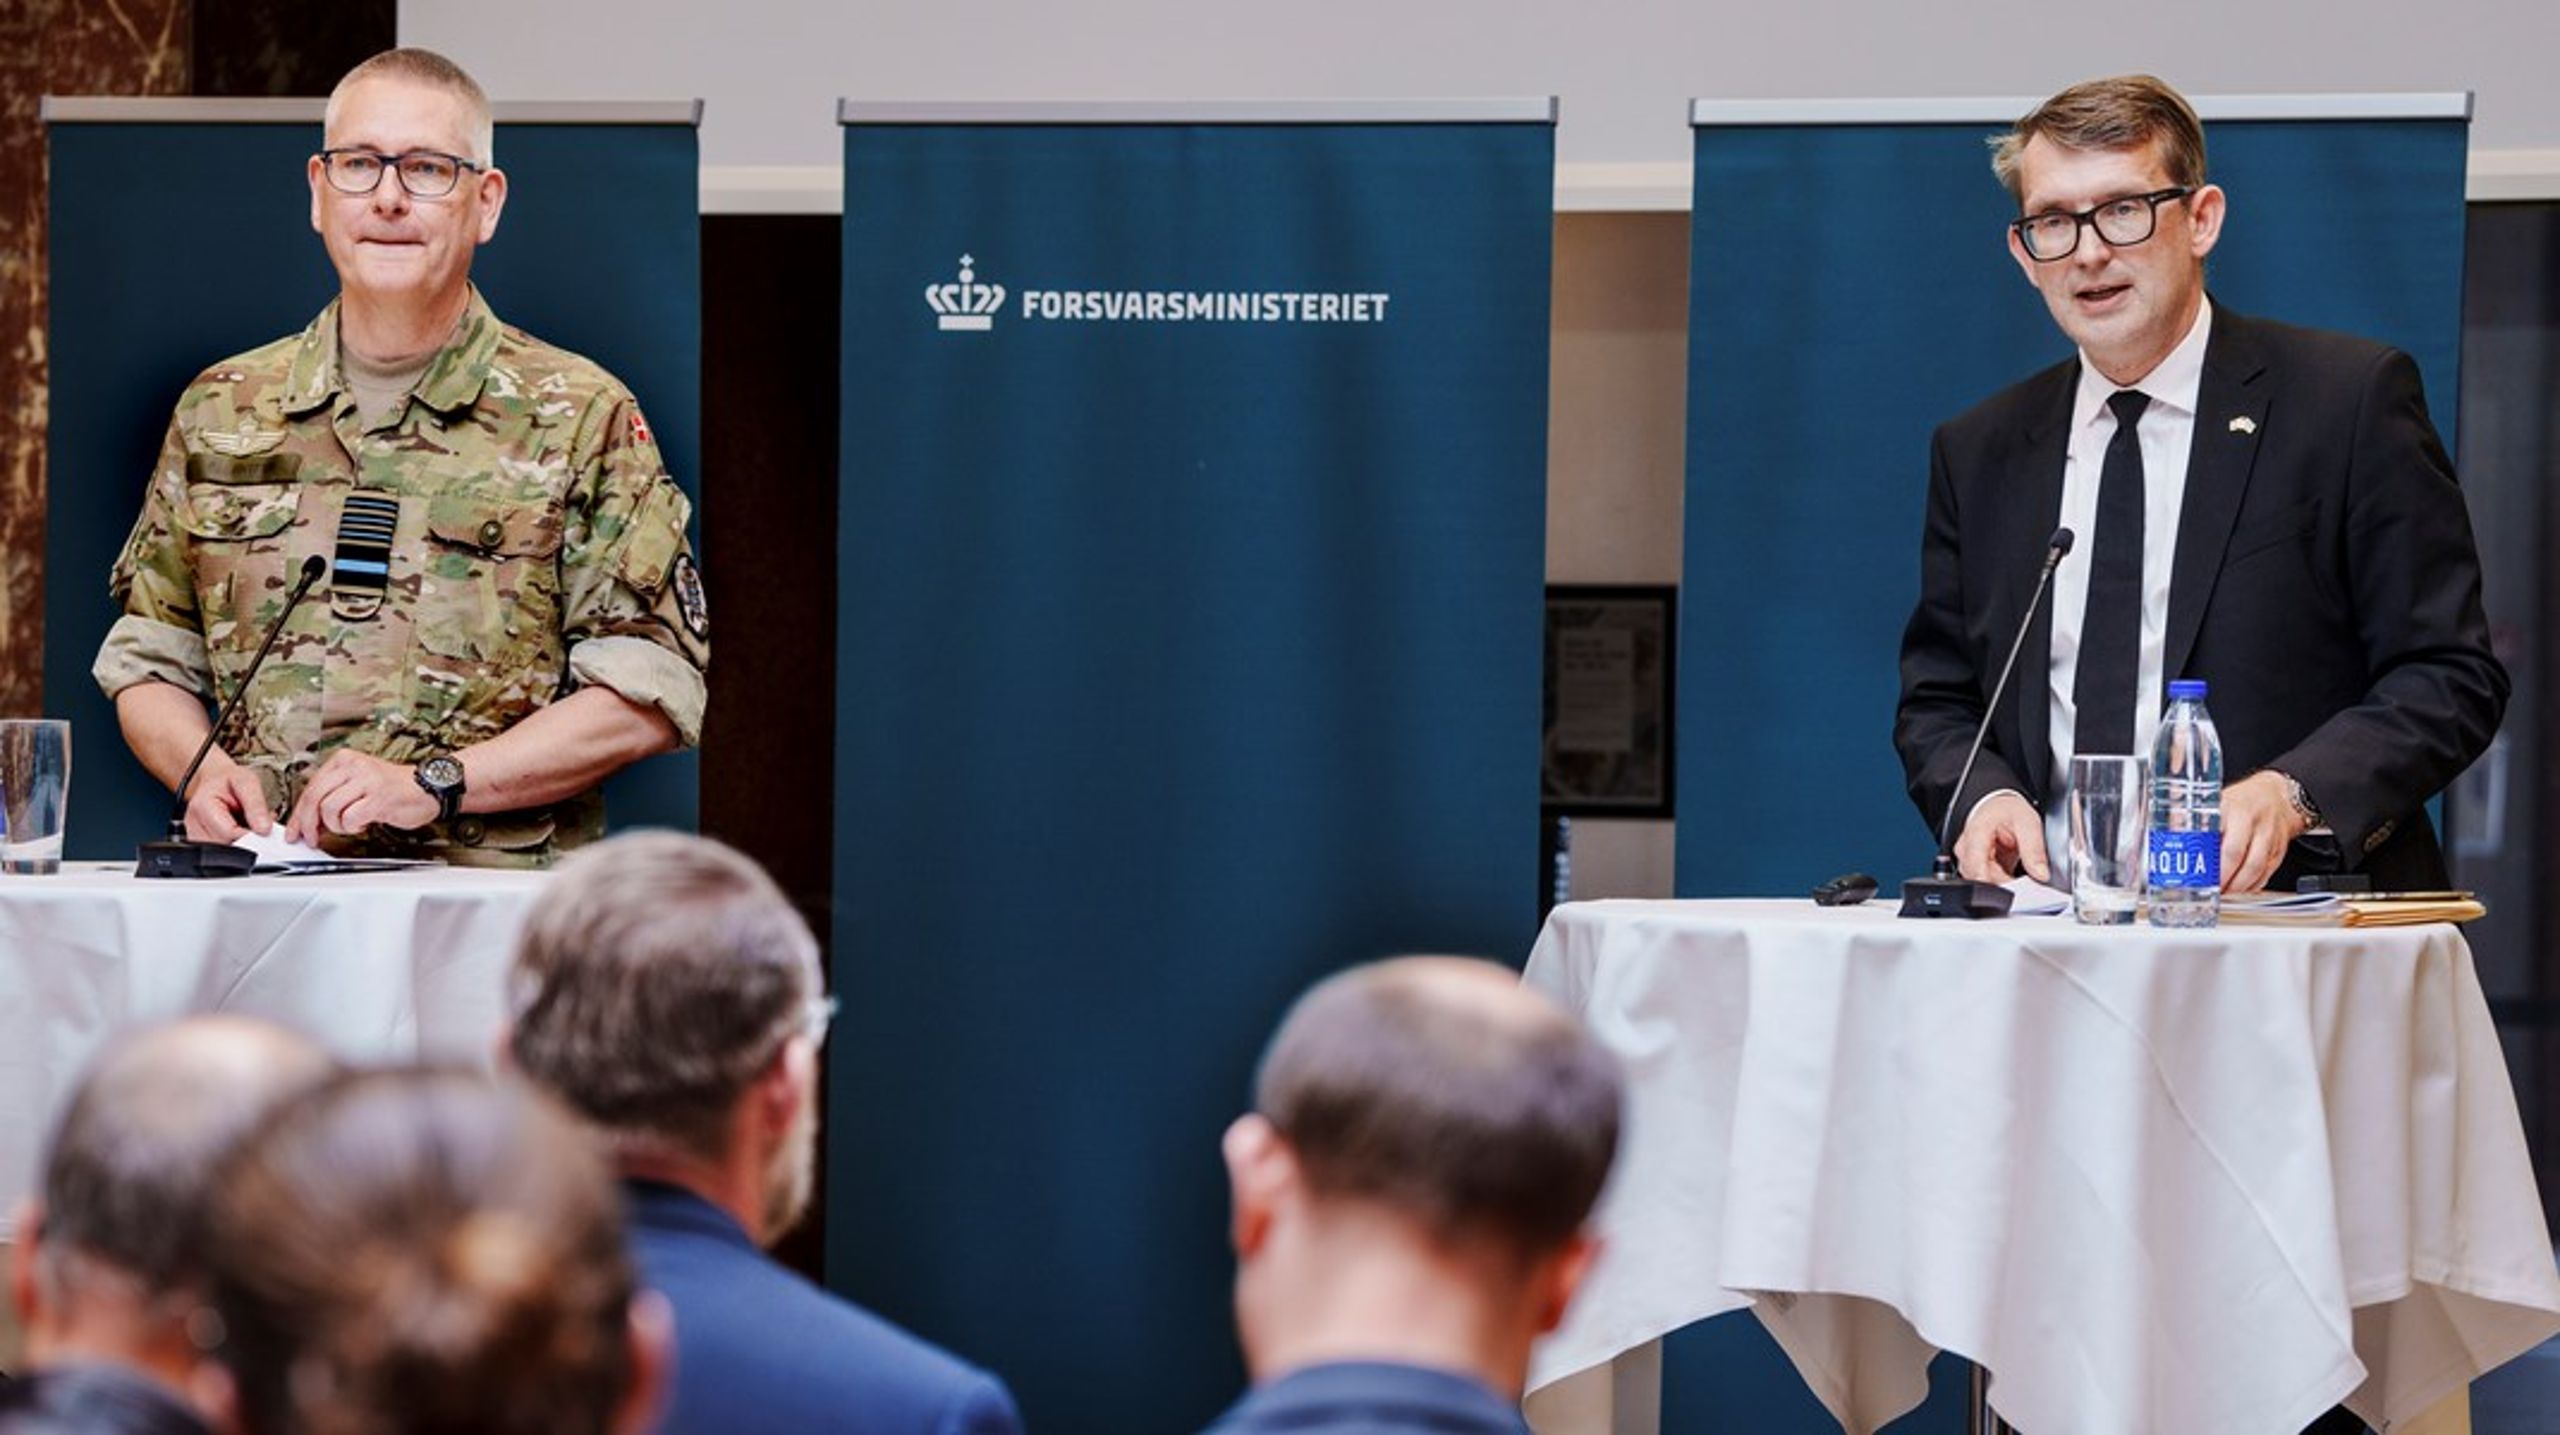 Fungerende forsvarsminister Troels Lund Poulsen (V) og forsvarschef Flemming Lentfer præsenterede den 4. maj en plan for genopretning af Forsvarets fundament i Forsvarsministeriet. Der skal blandt andet nedsættes en ekspertgruppe.